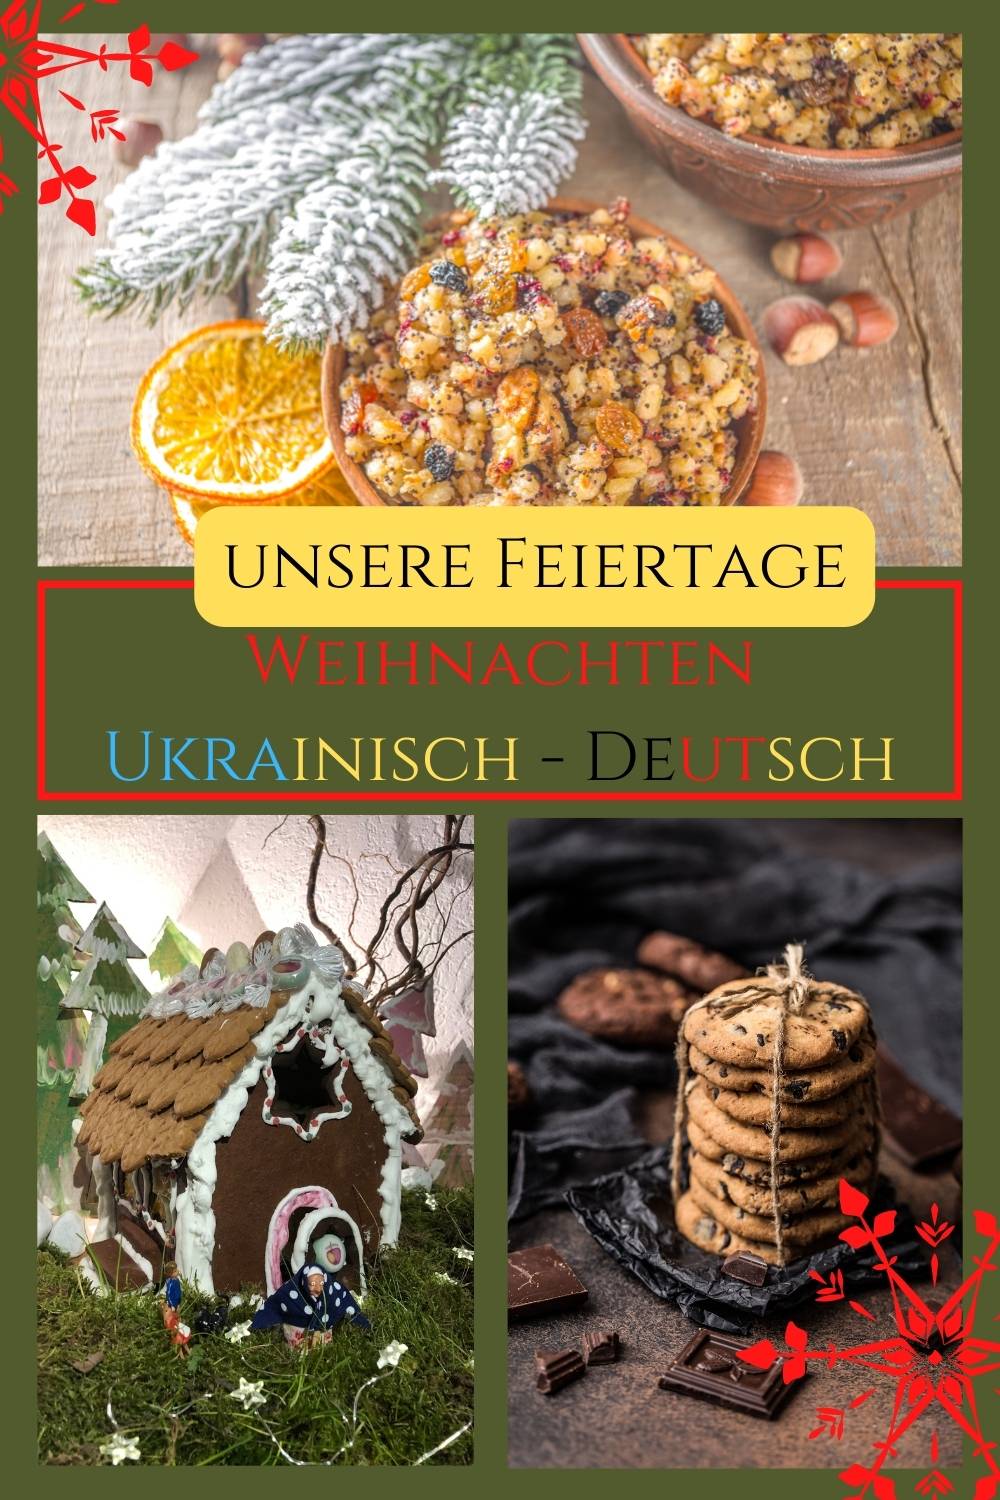 Weihnachtsplätzchen, Lebkuchenhaus und Kutja -Weihnachten deutsch ukrainisch